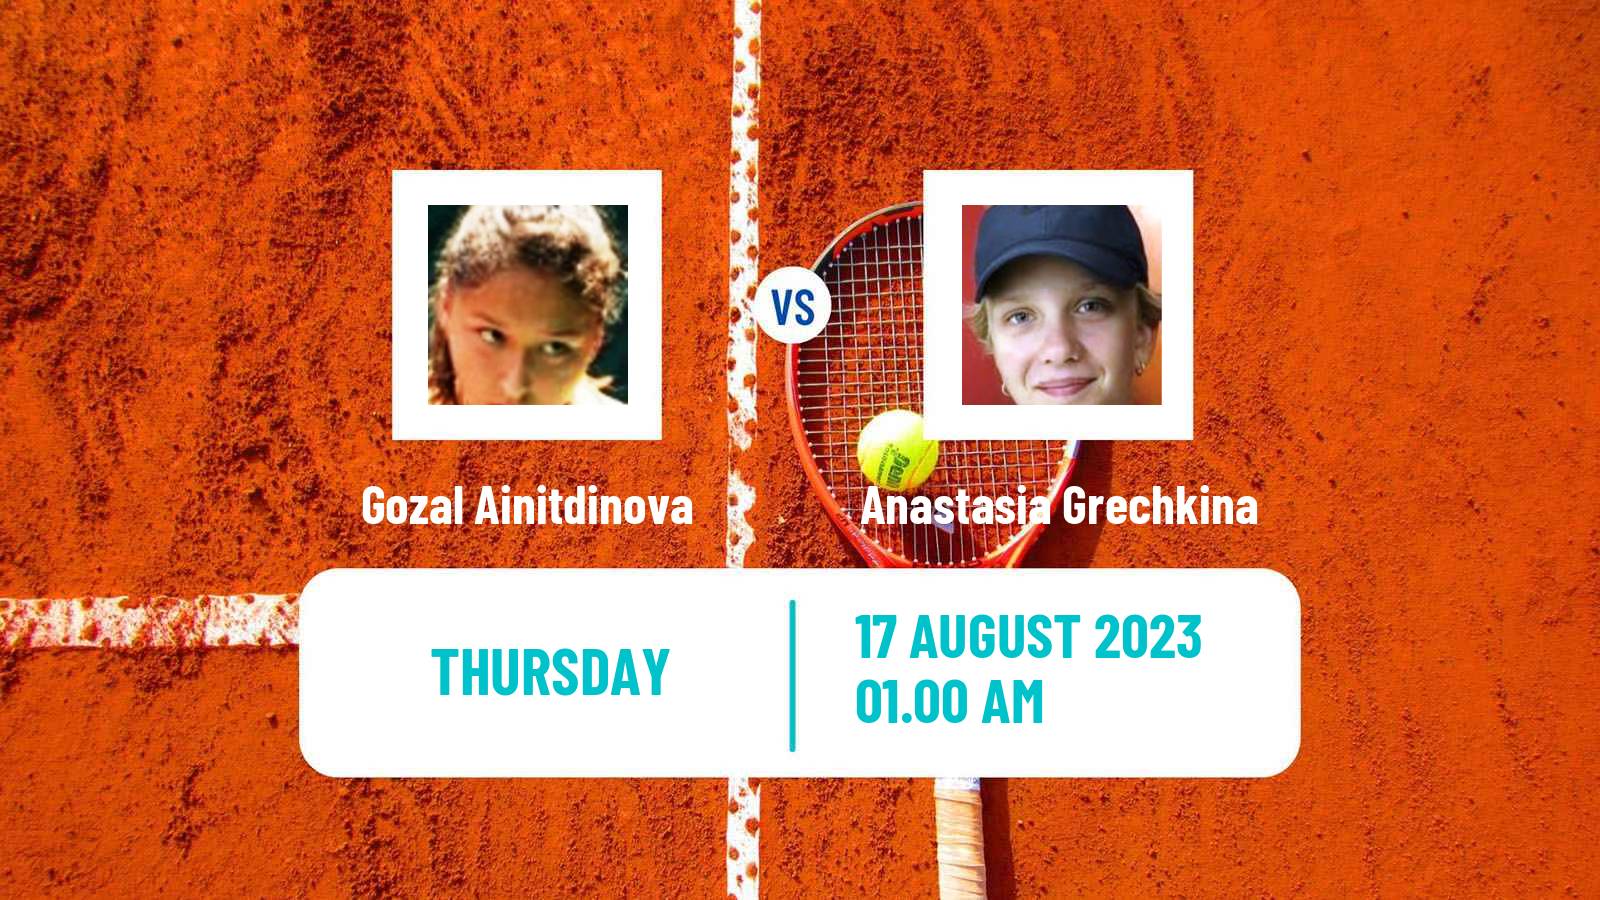 Tennis ITF W15 Ust Kamenogorsk 2 Women Gozal Ainitdinova - Anastasia Grechkina